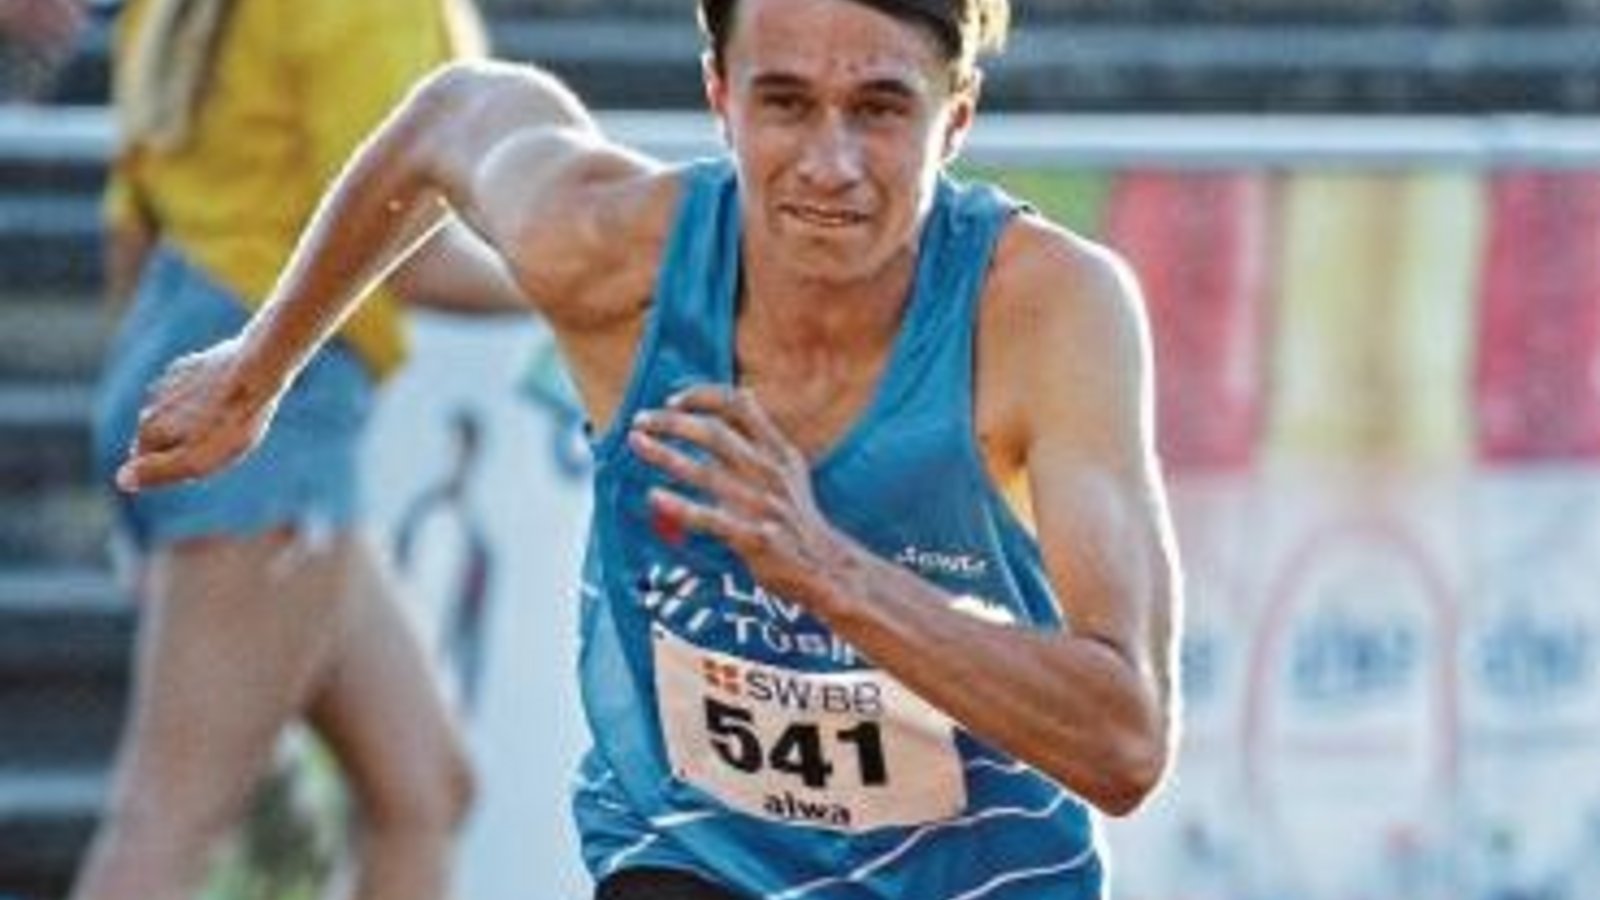 Paul Jelden war bisher eher auf den Strecken der Mittel- und Langdistanz zu Hause, lief in Besigheim aber die 400 Meter. Foto: Baumann